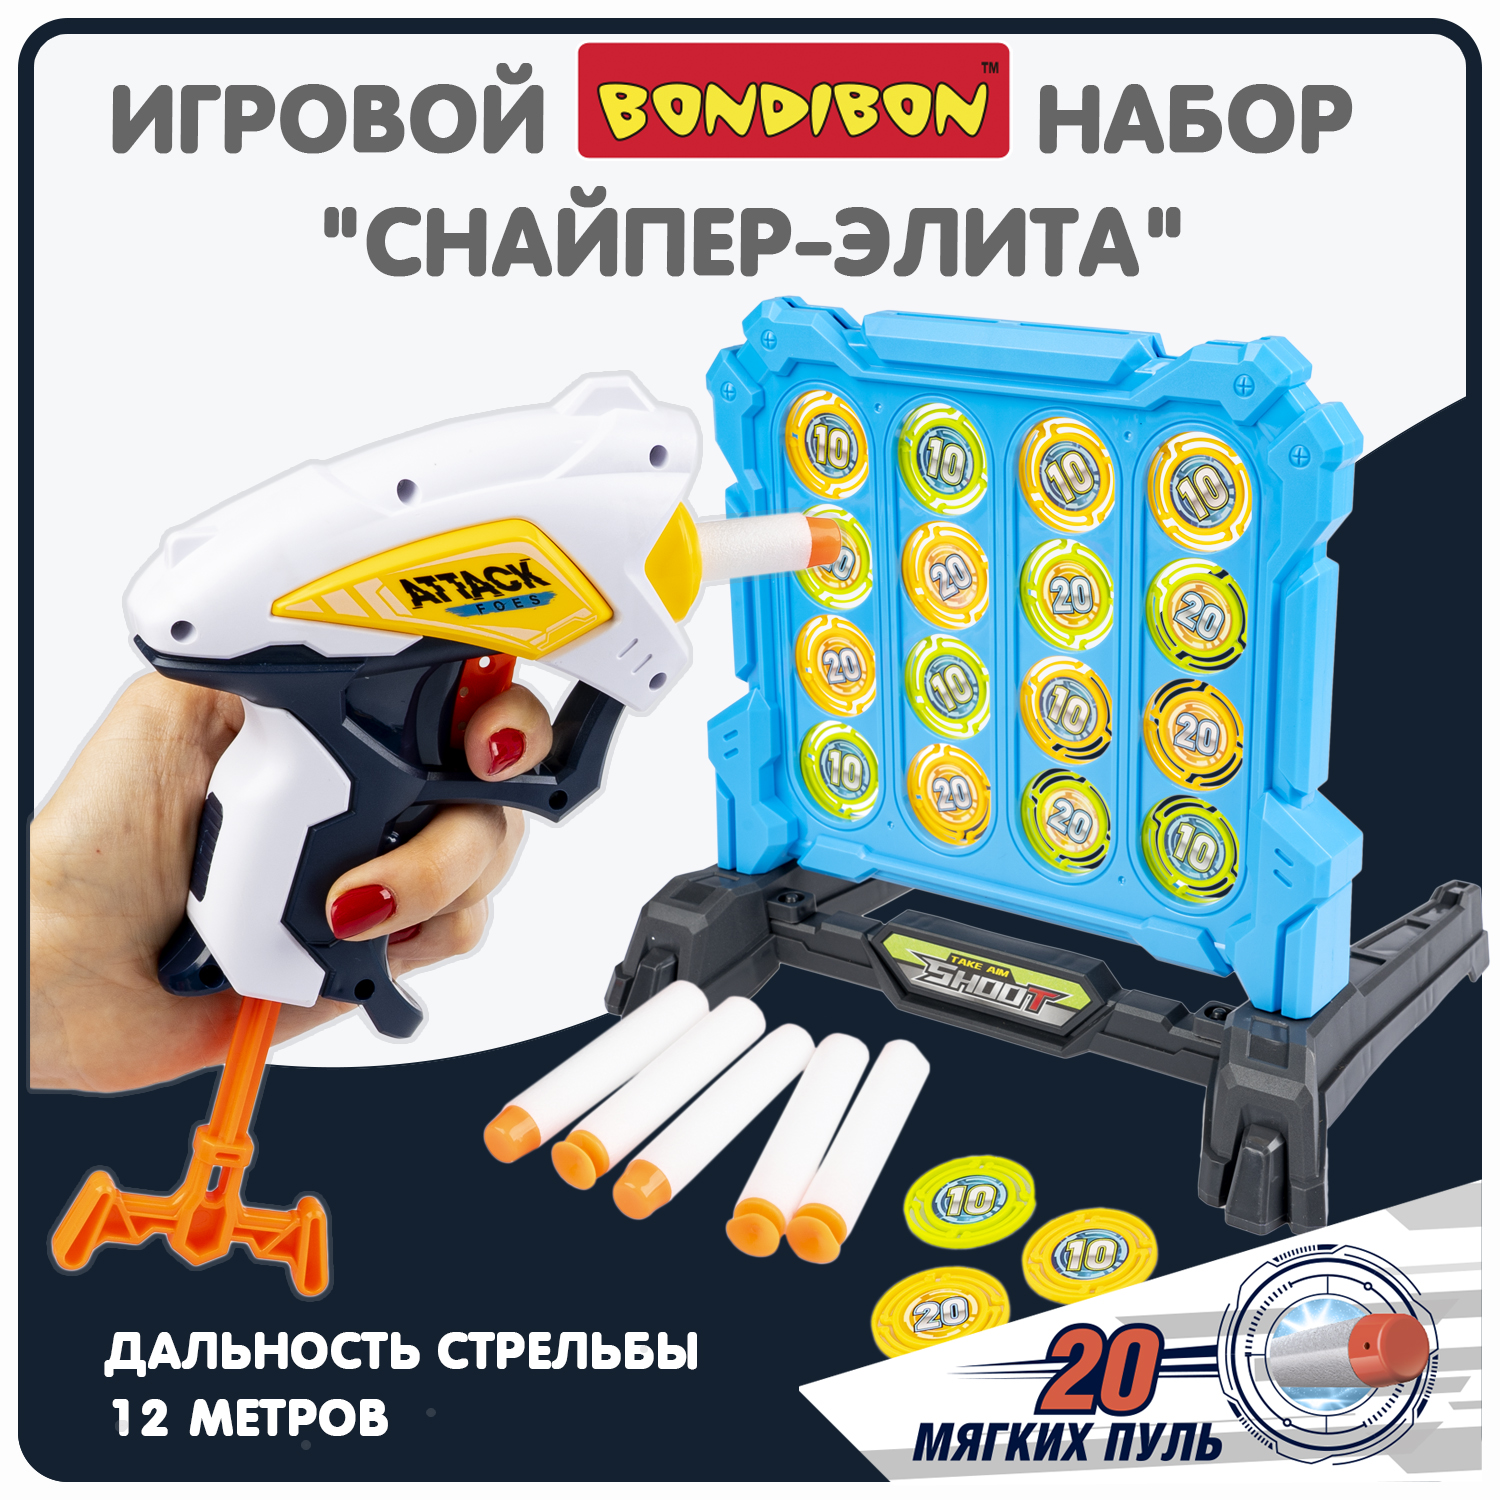 Набор игровой Bondibon CНАЙПЕР-элита пистолет, мишень, мягкие пули / ВВ6064(игрушка) набор лучника лук и стрелы мишень 21 коробка